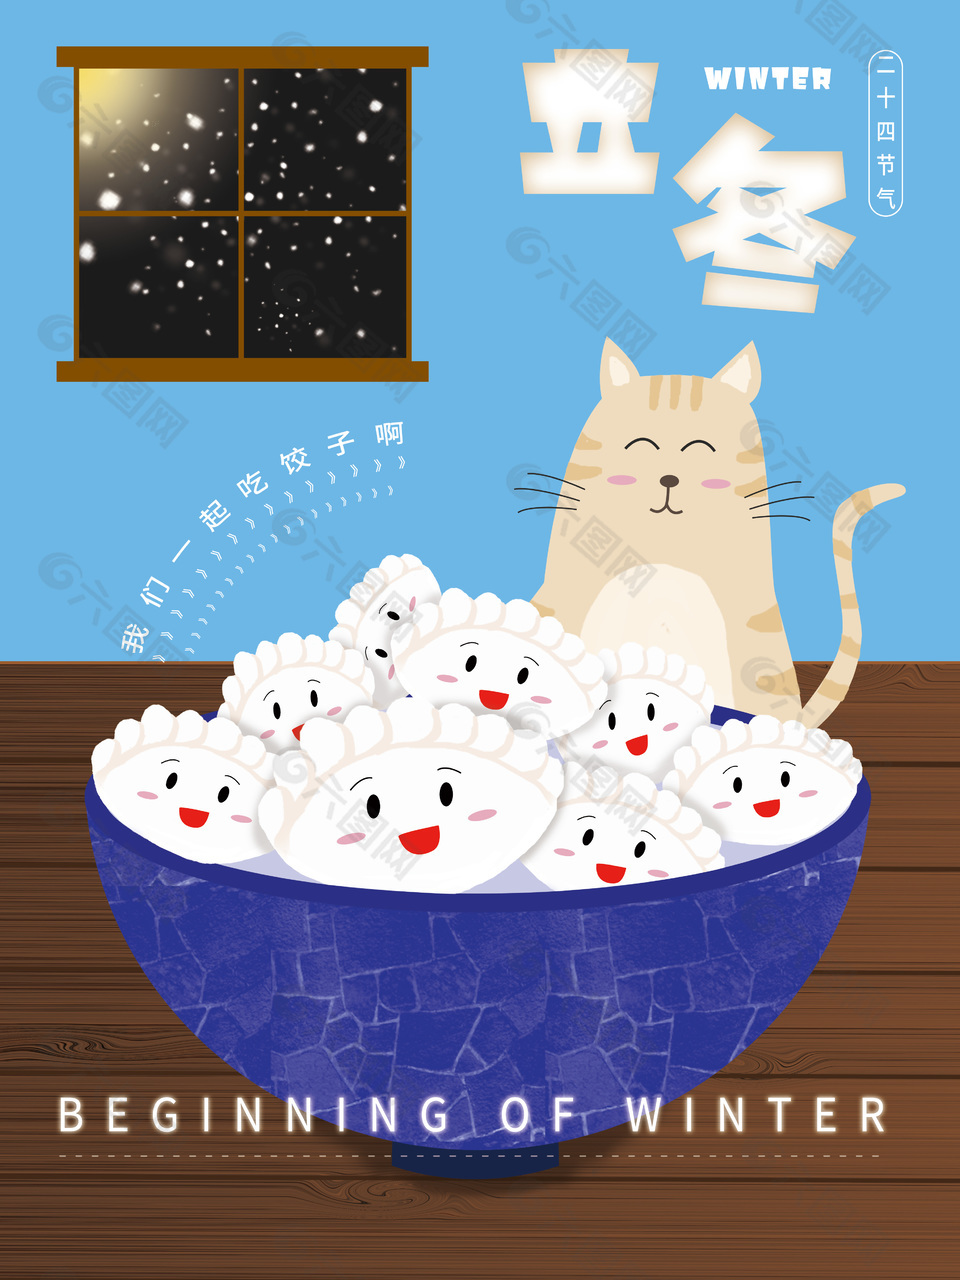 可爱卡通风格立冬吃饺子节气宣传海报